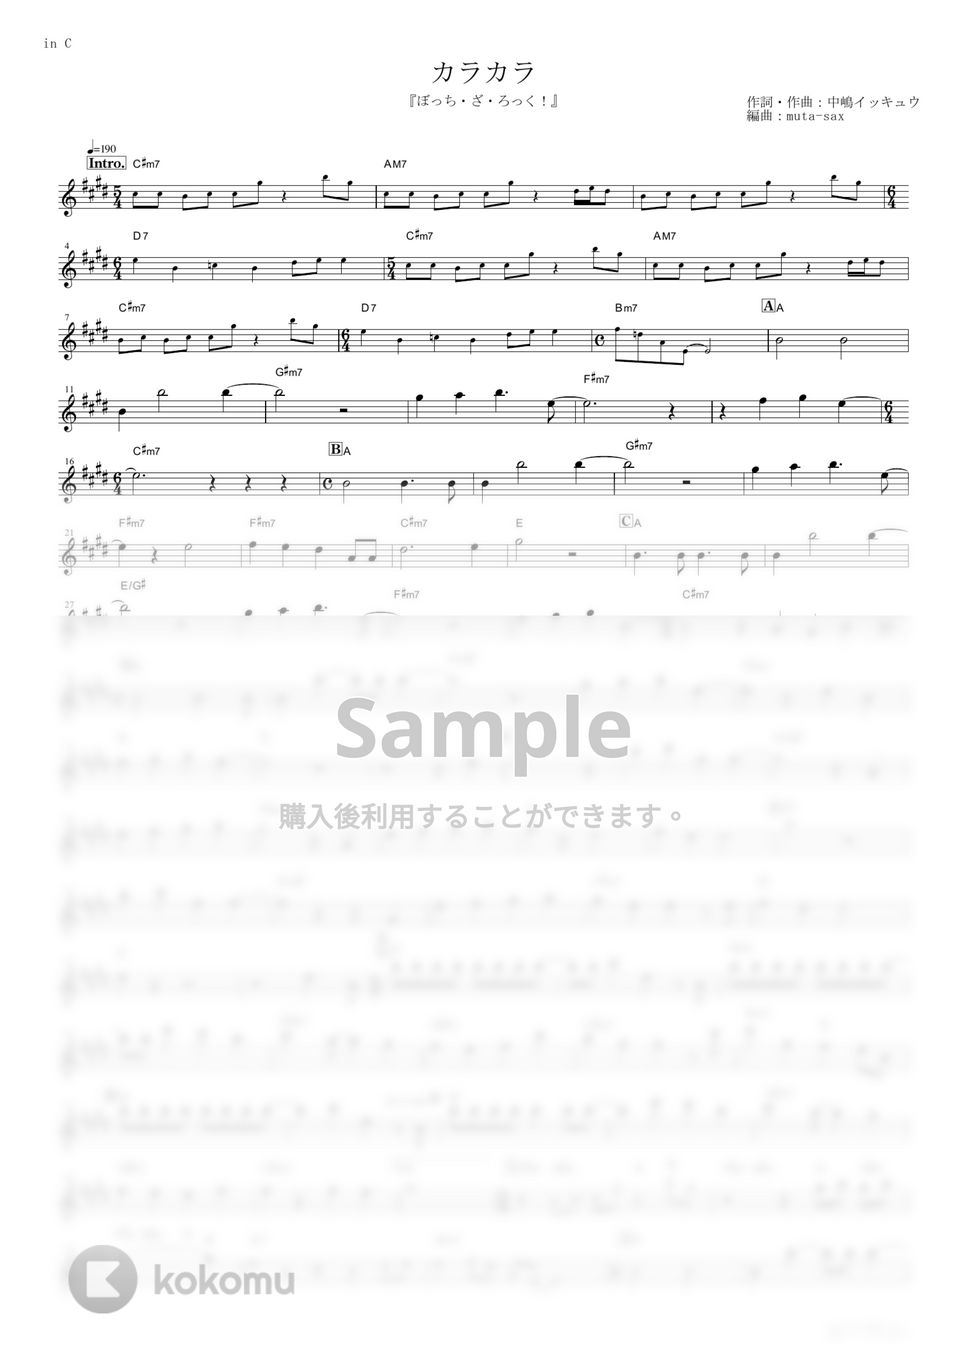 結束バンド - カラカラ (『ぼっち・ざ・ろっく！』 / in C) by muta-sax